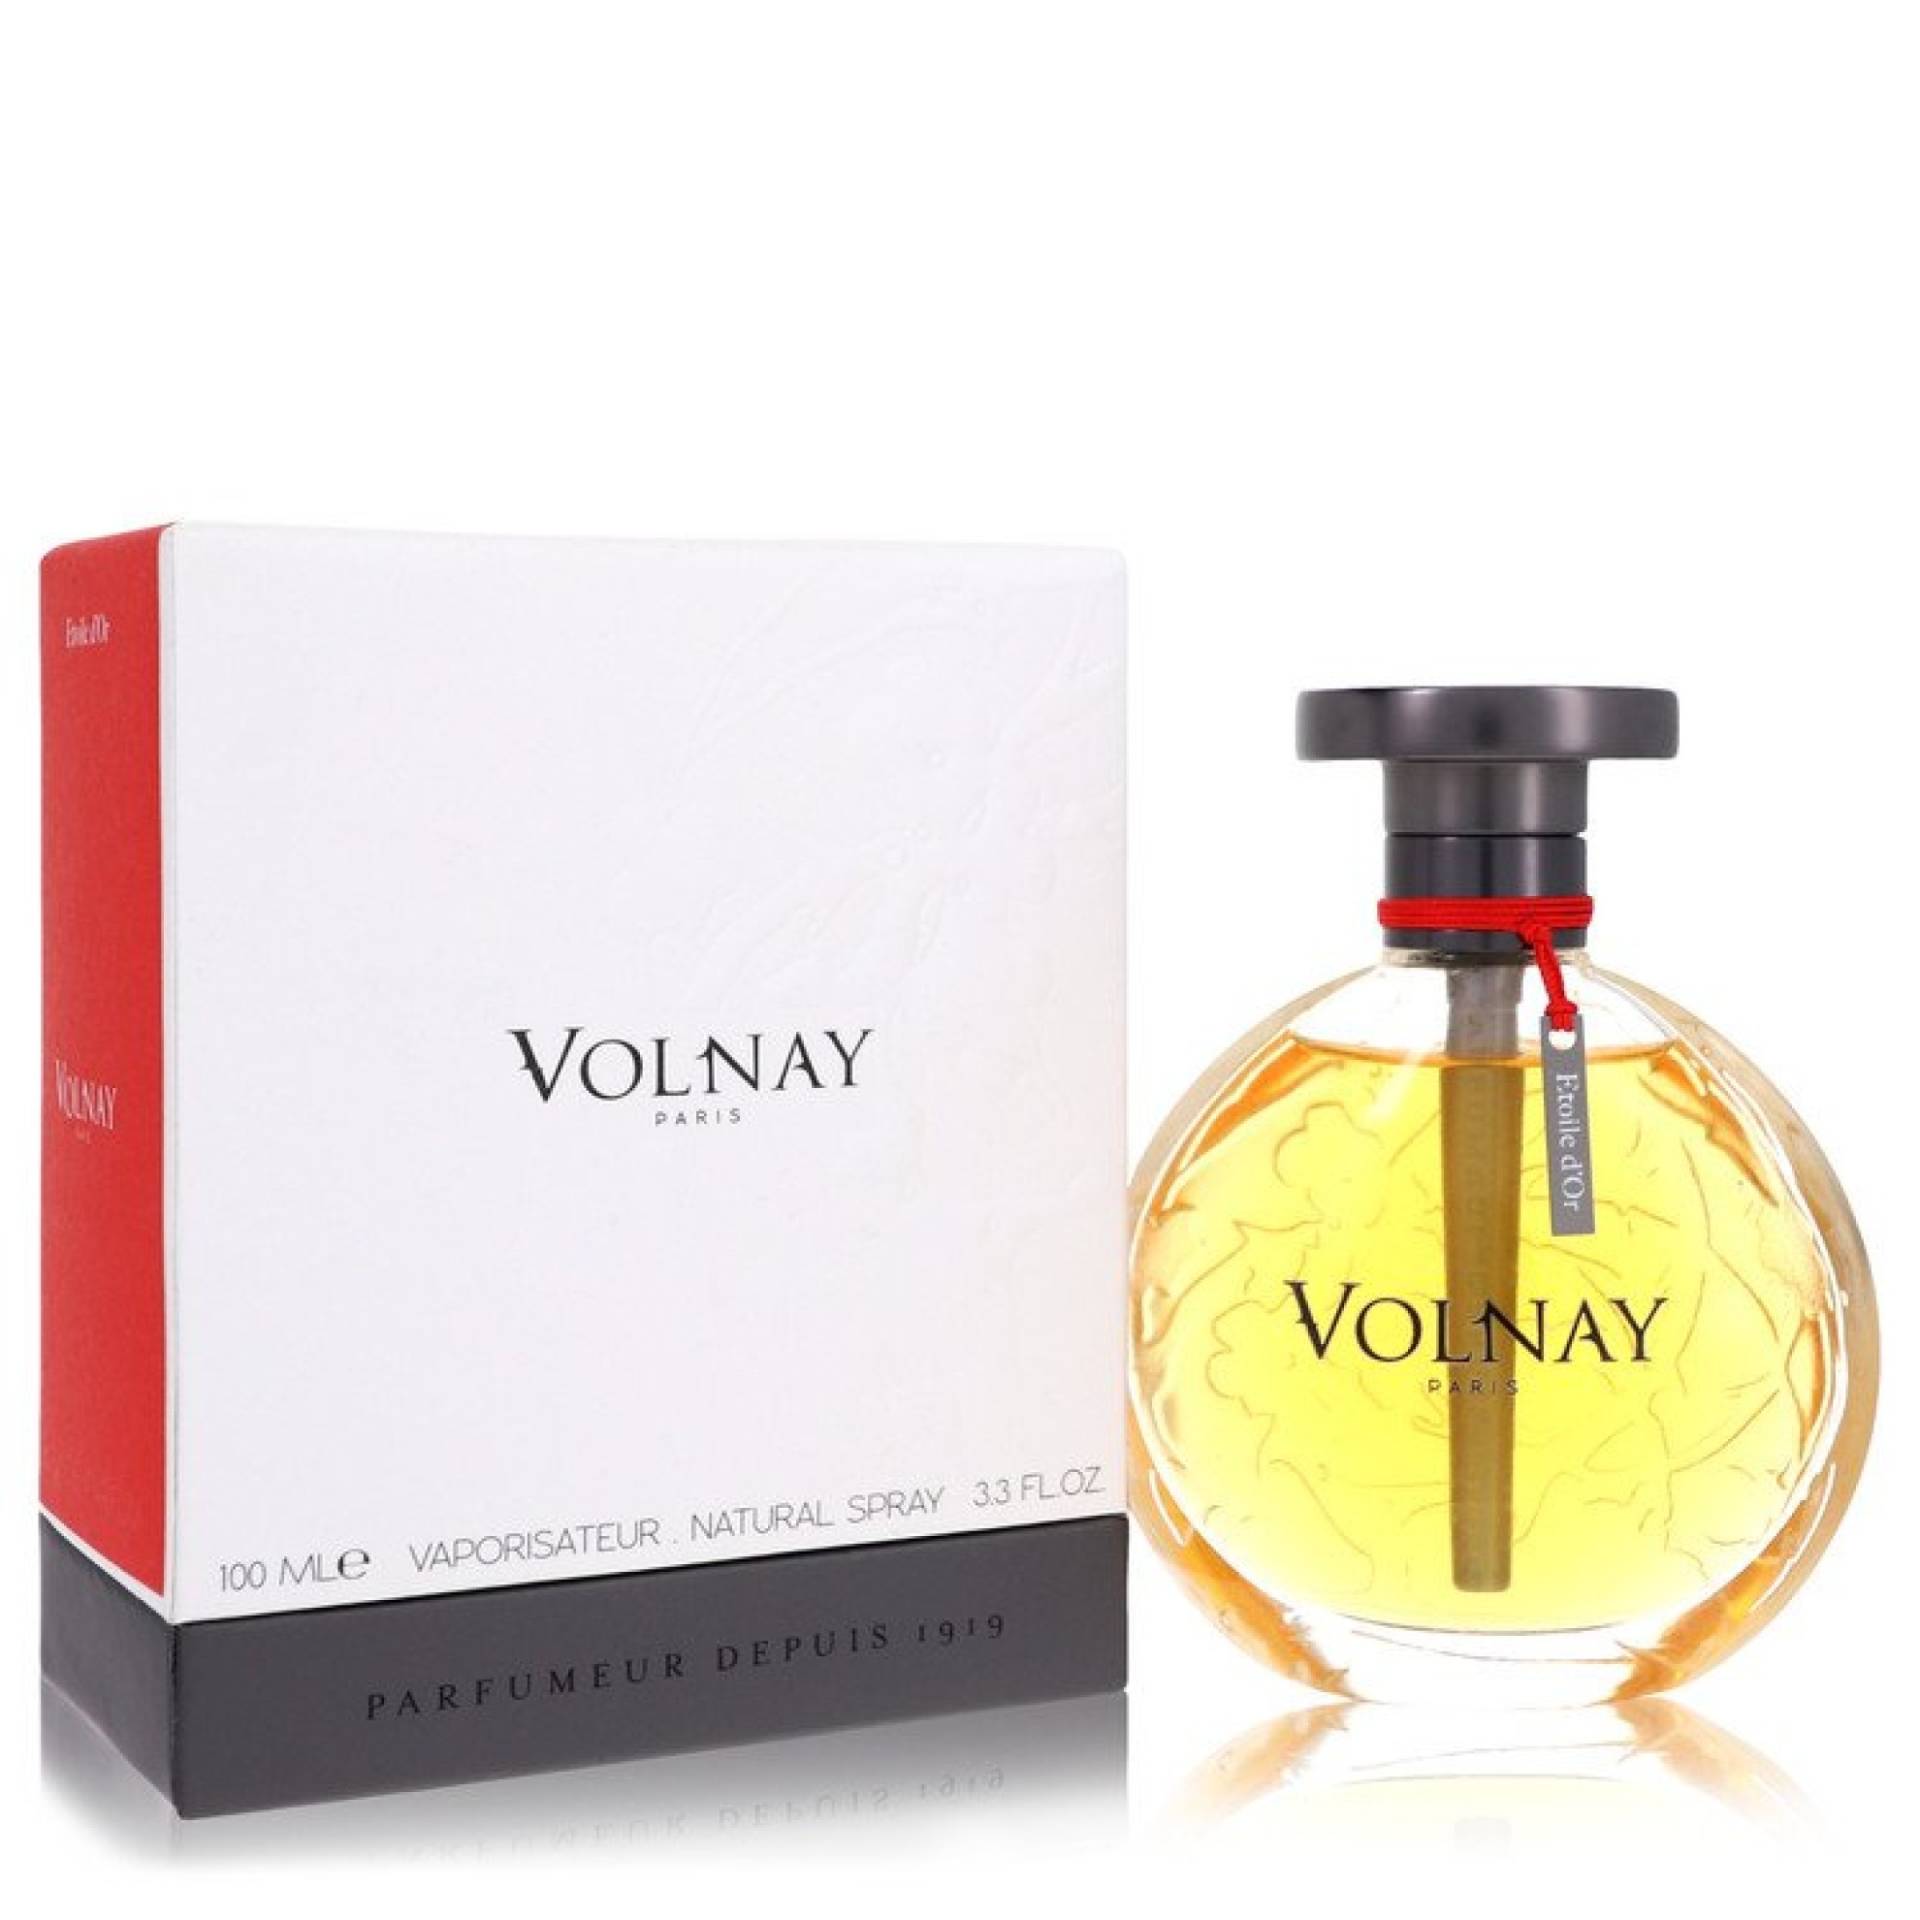 Volnay Etoile D'or Eau De Parfum Spray 100 ml von Volnay